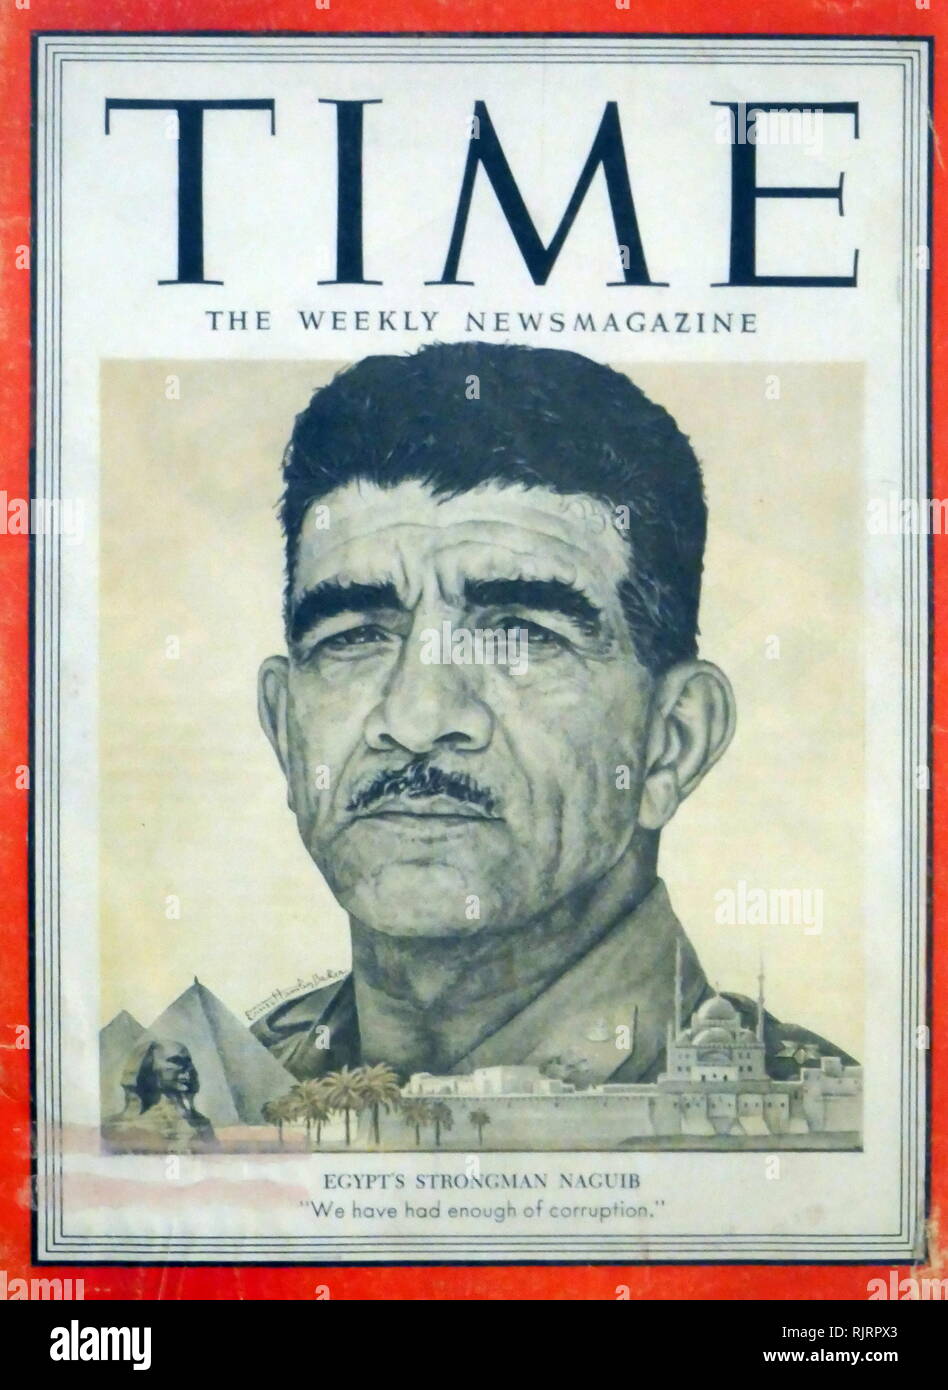 Mohamed Naguib (1901 - 1984), premier président de l'Égypte, de la déclaration de la République le 18 juin 1953 au 14 novembre 1954. Avec Gamal Abdel Nasser, il était le principal chef de la révolution égyptienne de 1952. Banque D'Images